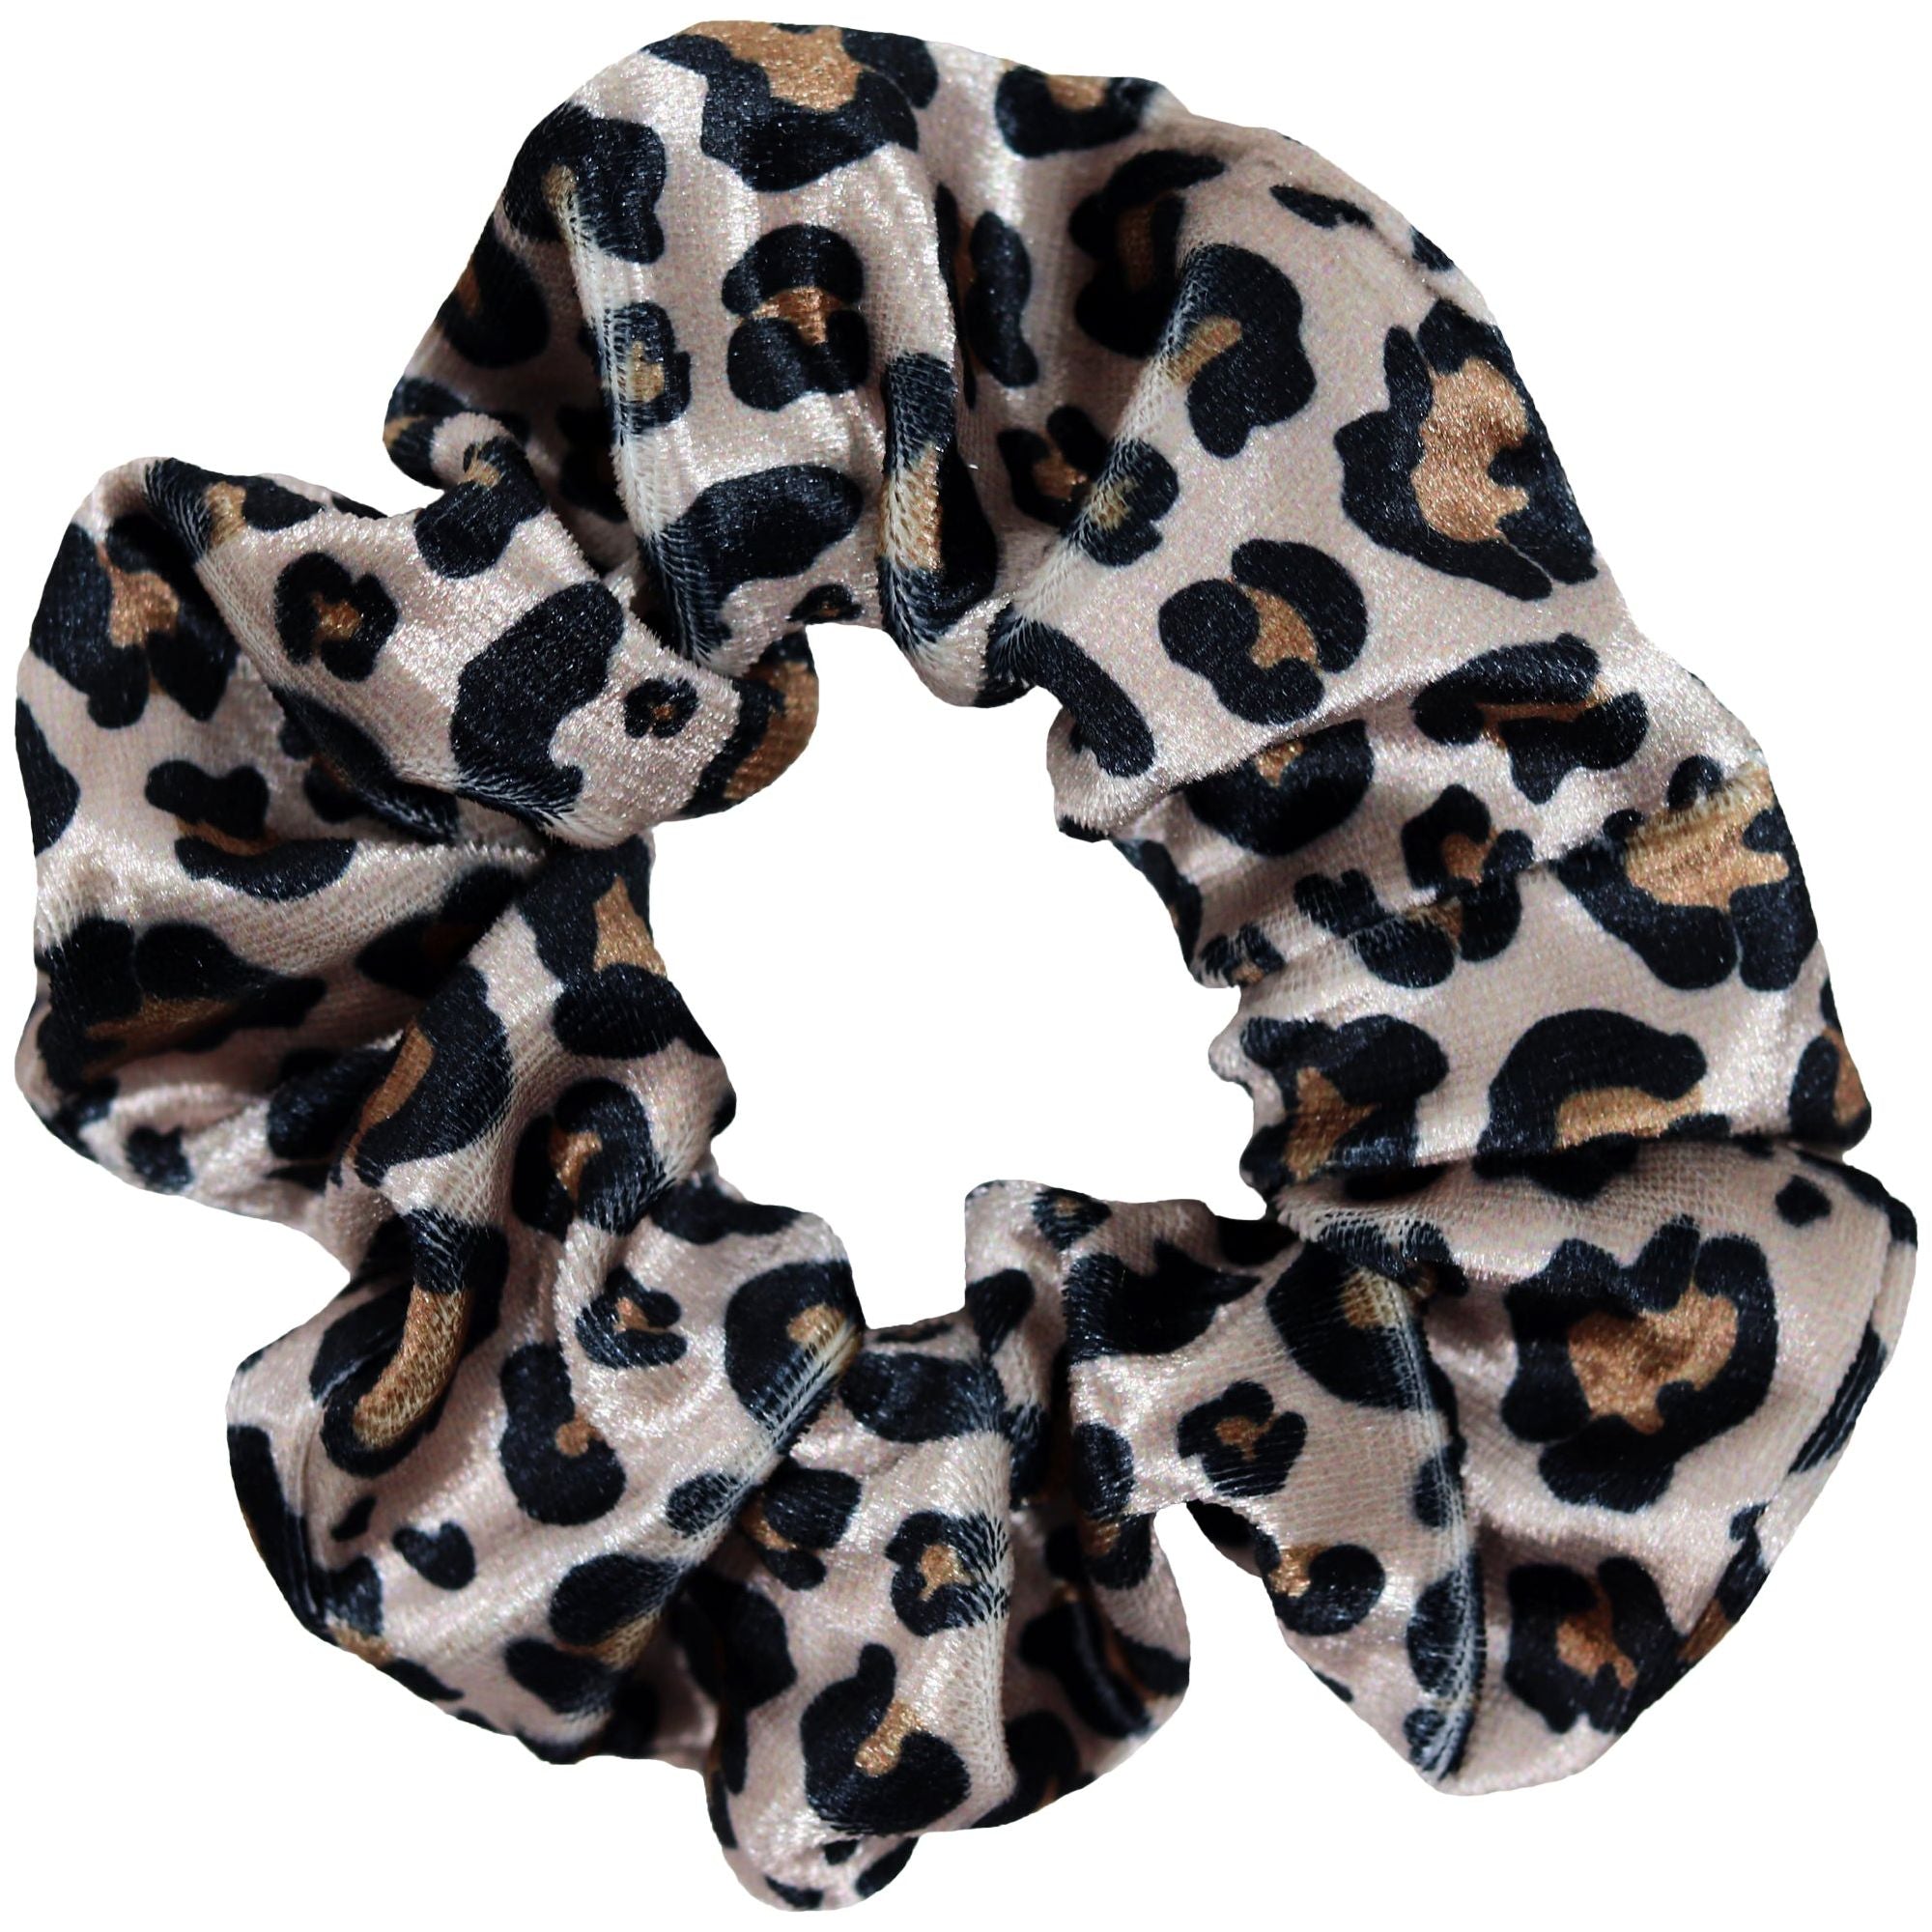 Velvet Leopard Cheetah Scrunchie Cotton Hair Ties Ponytail Holder Scru